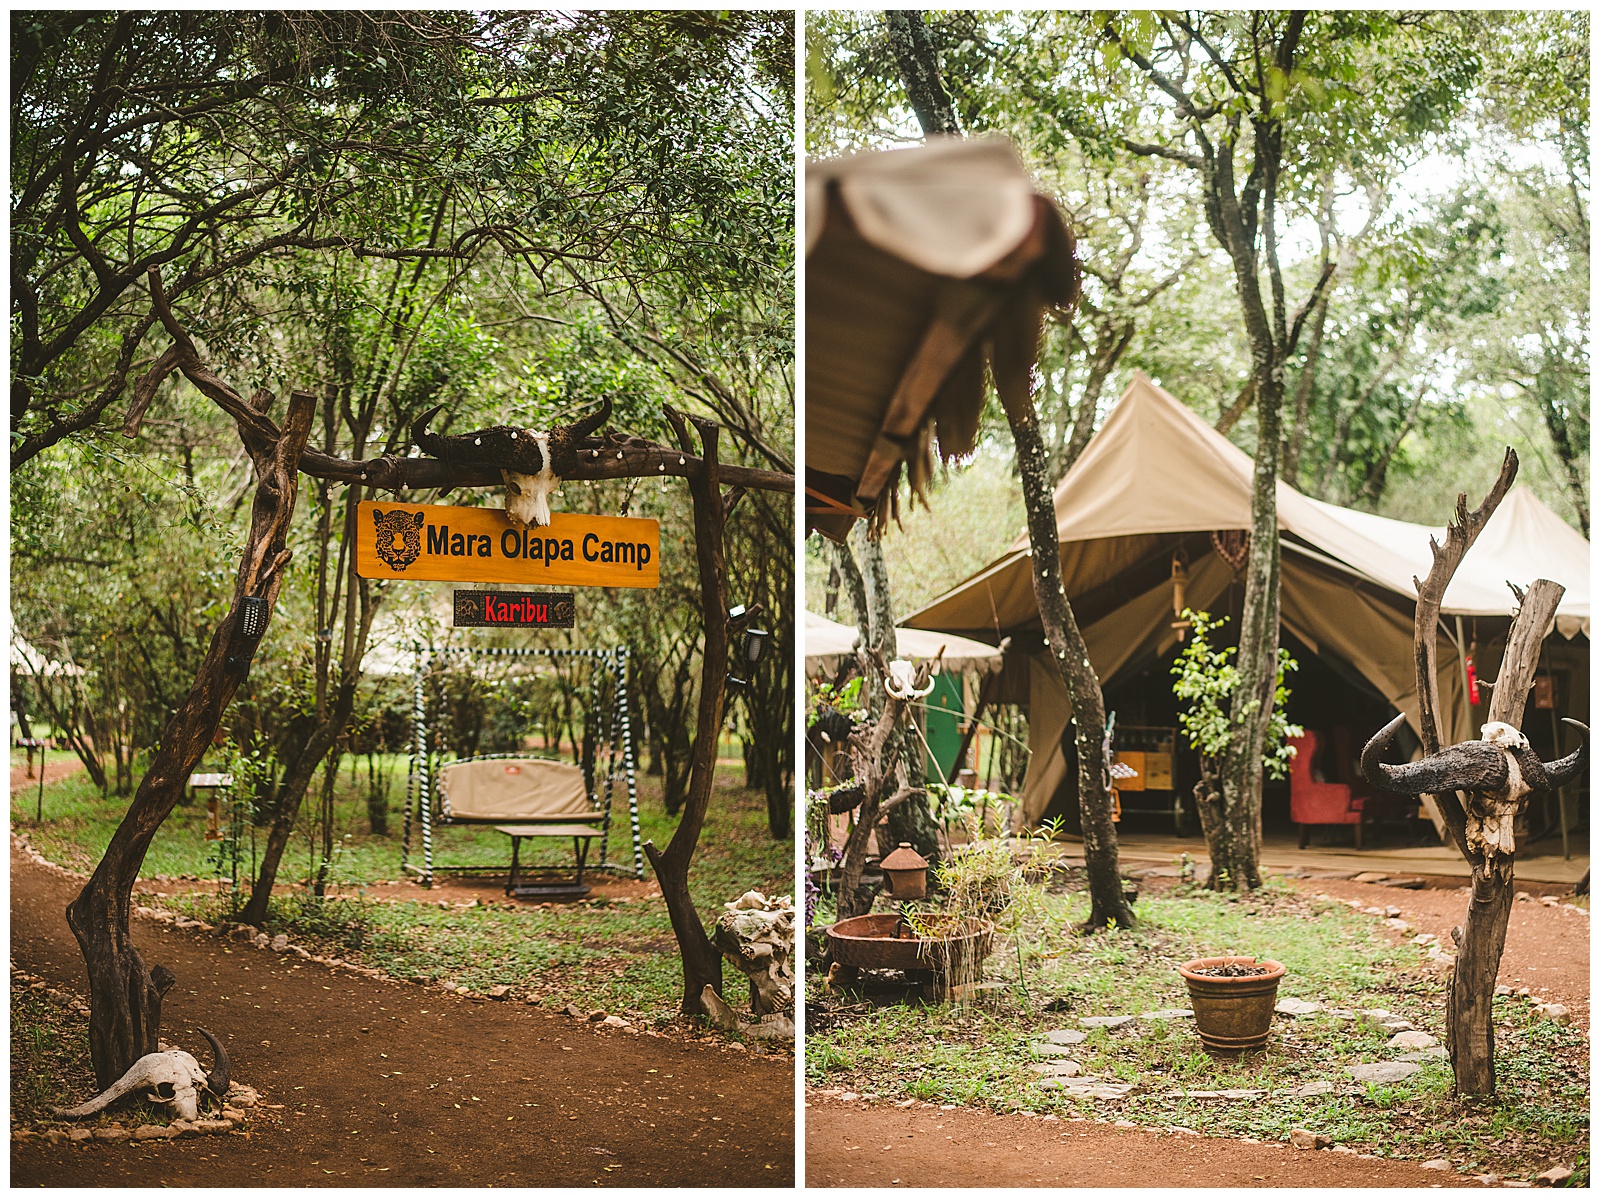 Mara Olapa Camp